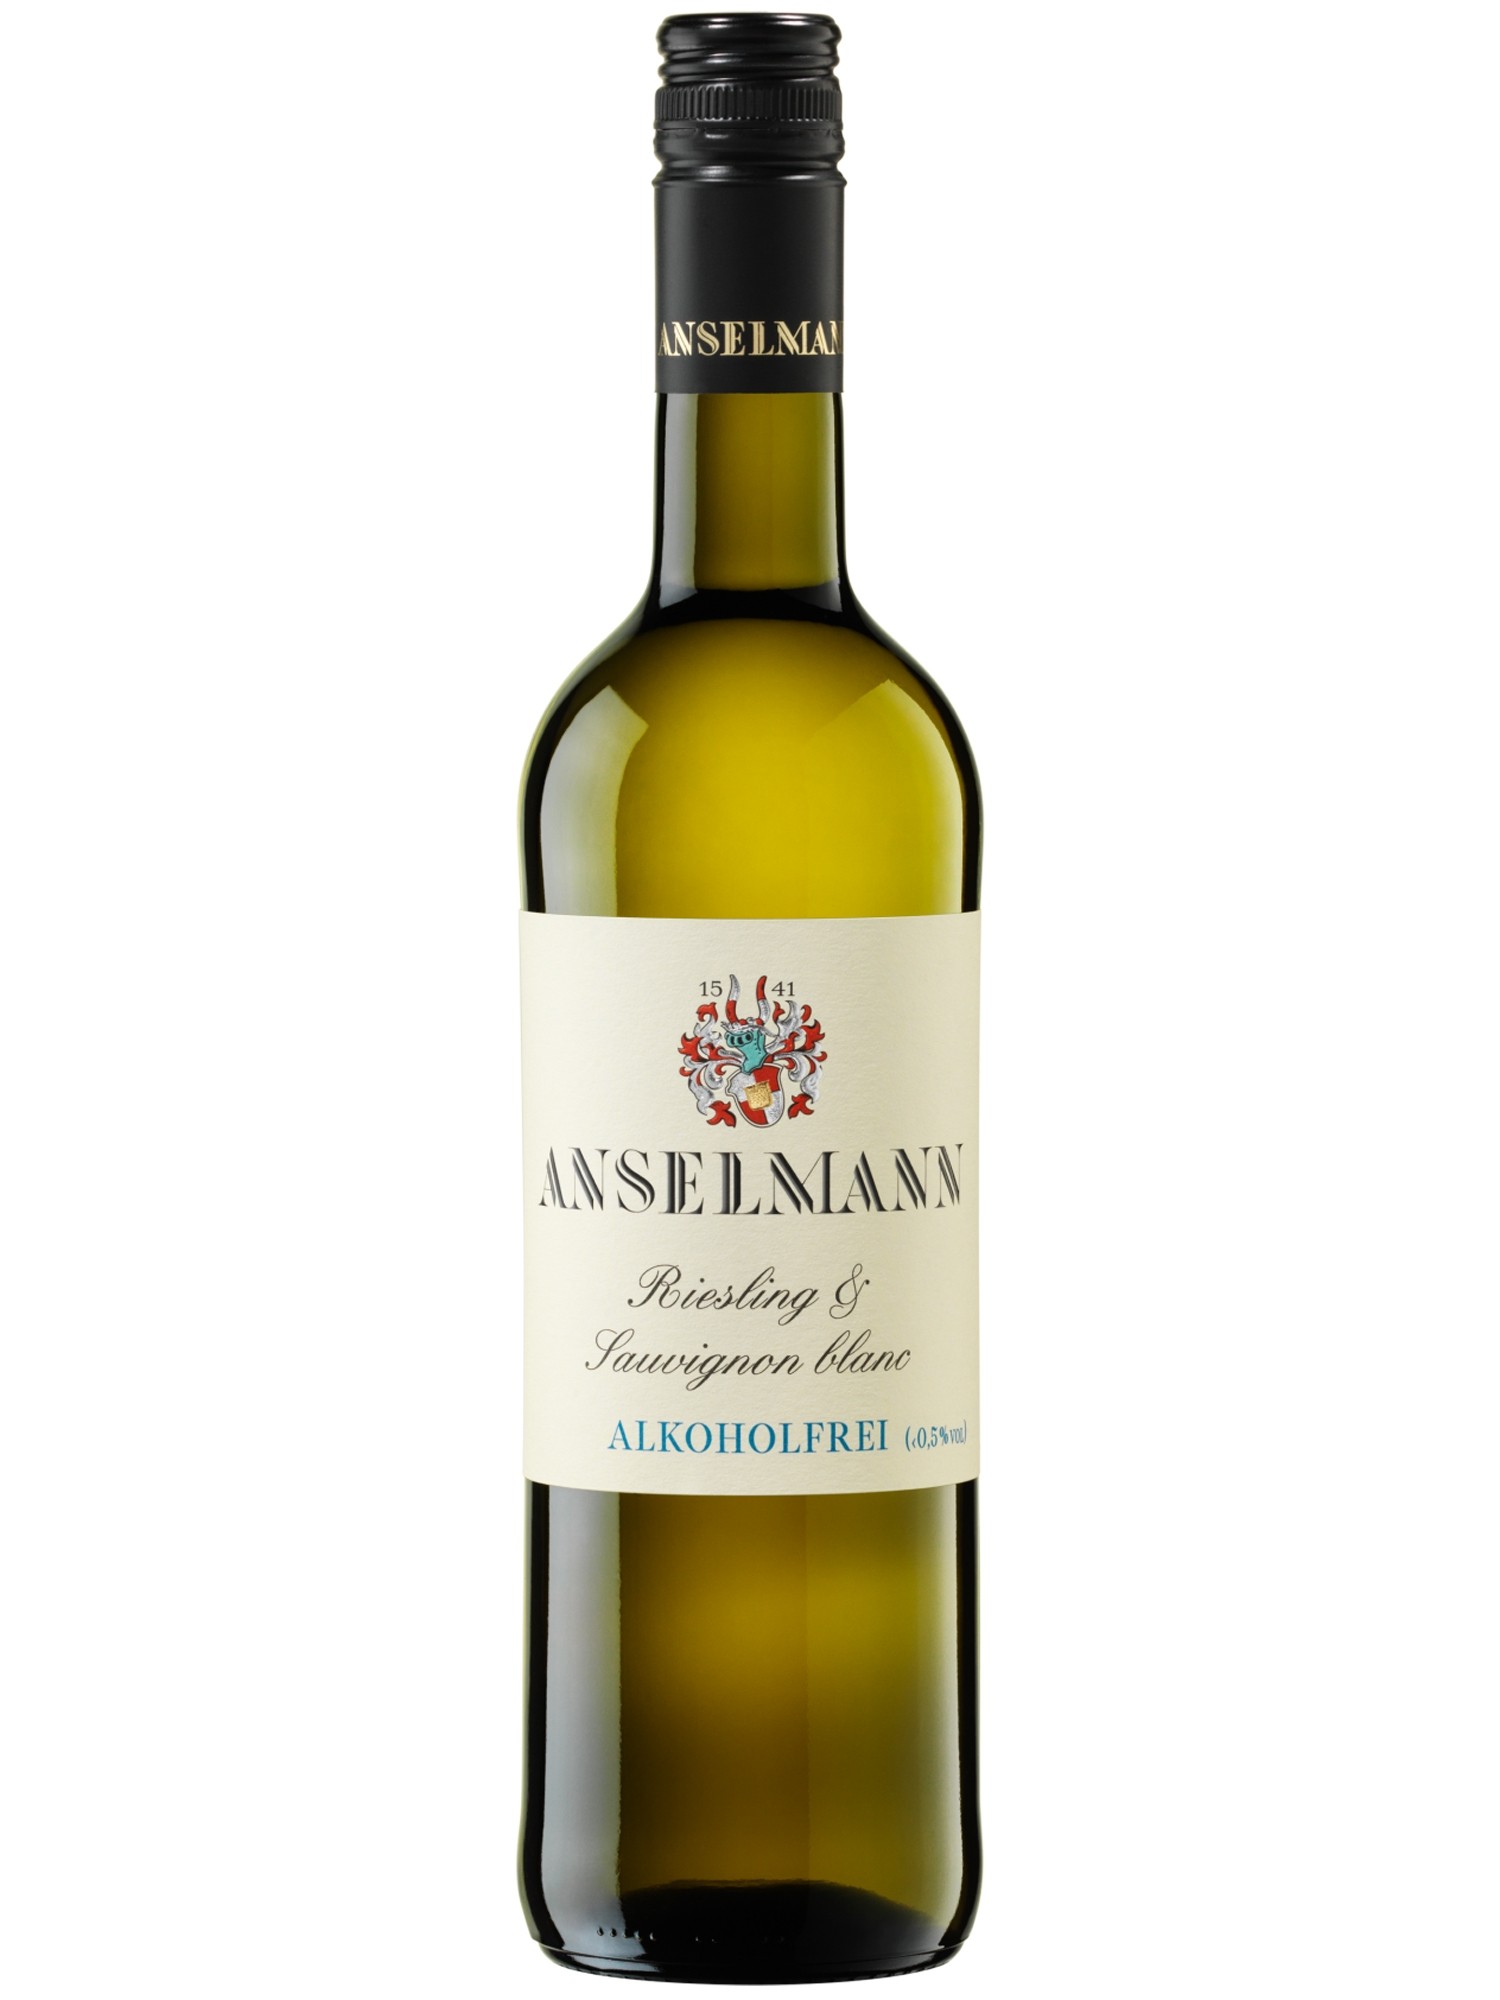 Riesling & Sauvignon Blanc Alkoholfrei | Pfalz Wein Online